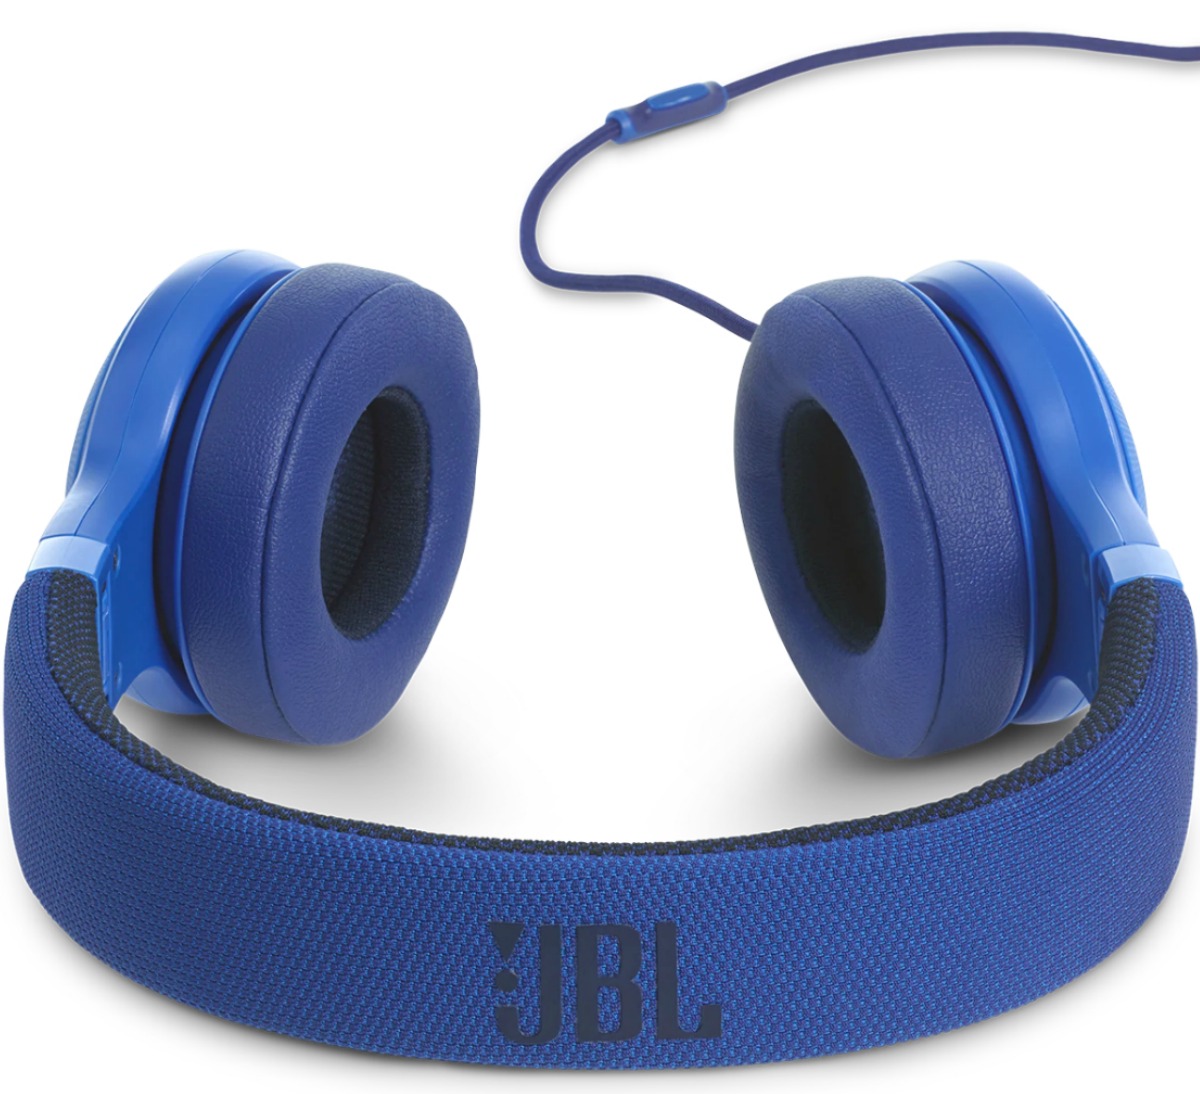 Наушники проводные синие. Наушники JBL e35. Наушники ДЖБЛ синие. Наушники JBL проводные синие. JBL наушники проводные накладные.